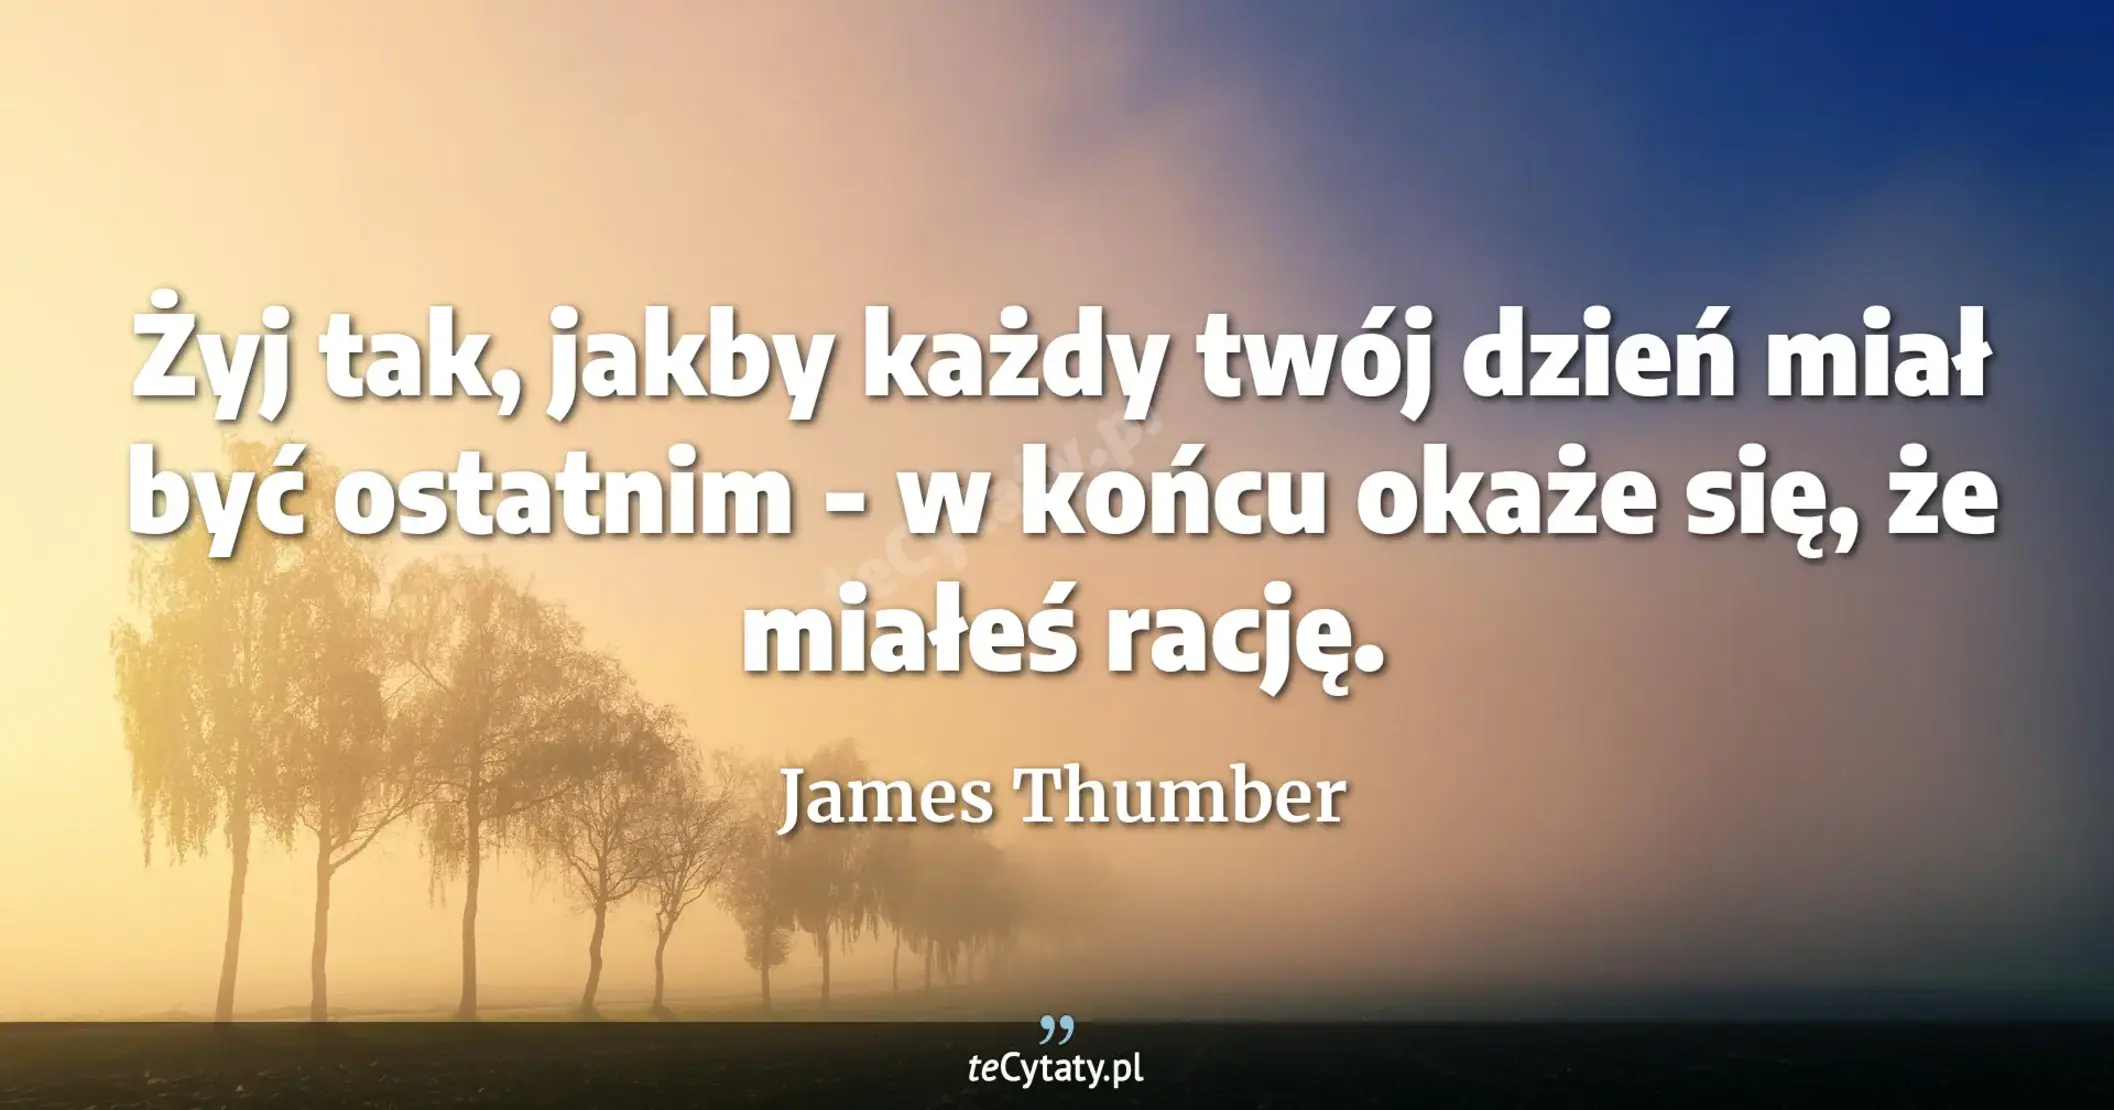 Żyj tak, jakby każdy twój dzień miał być ostatnim - w końcu okaże się, że miałeś rację. - James Thumber